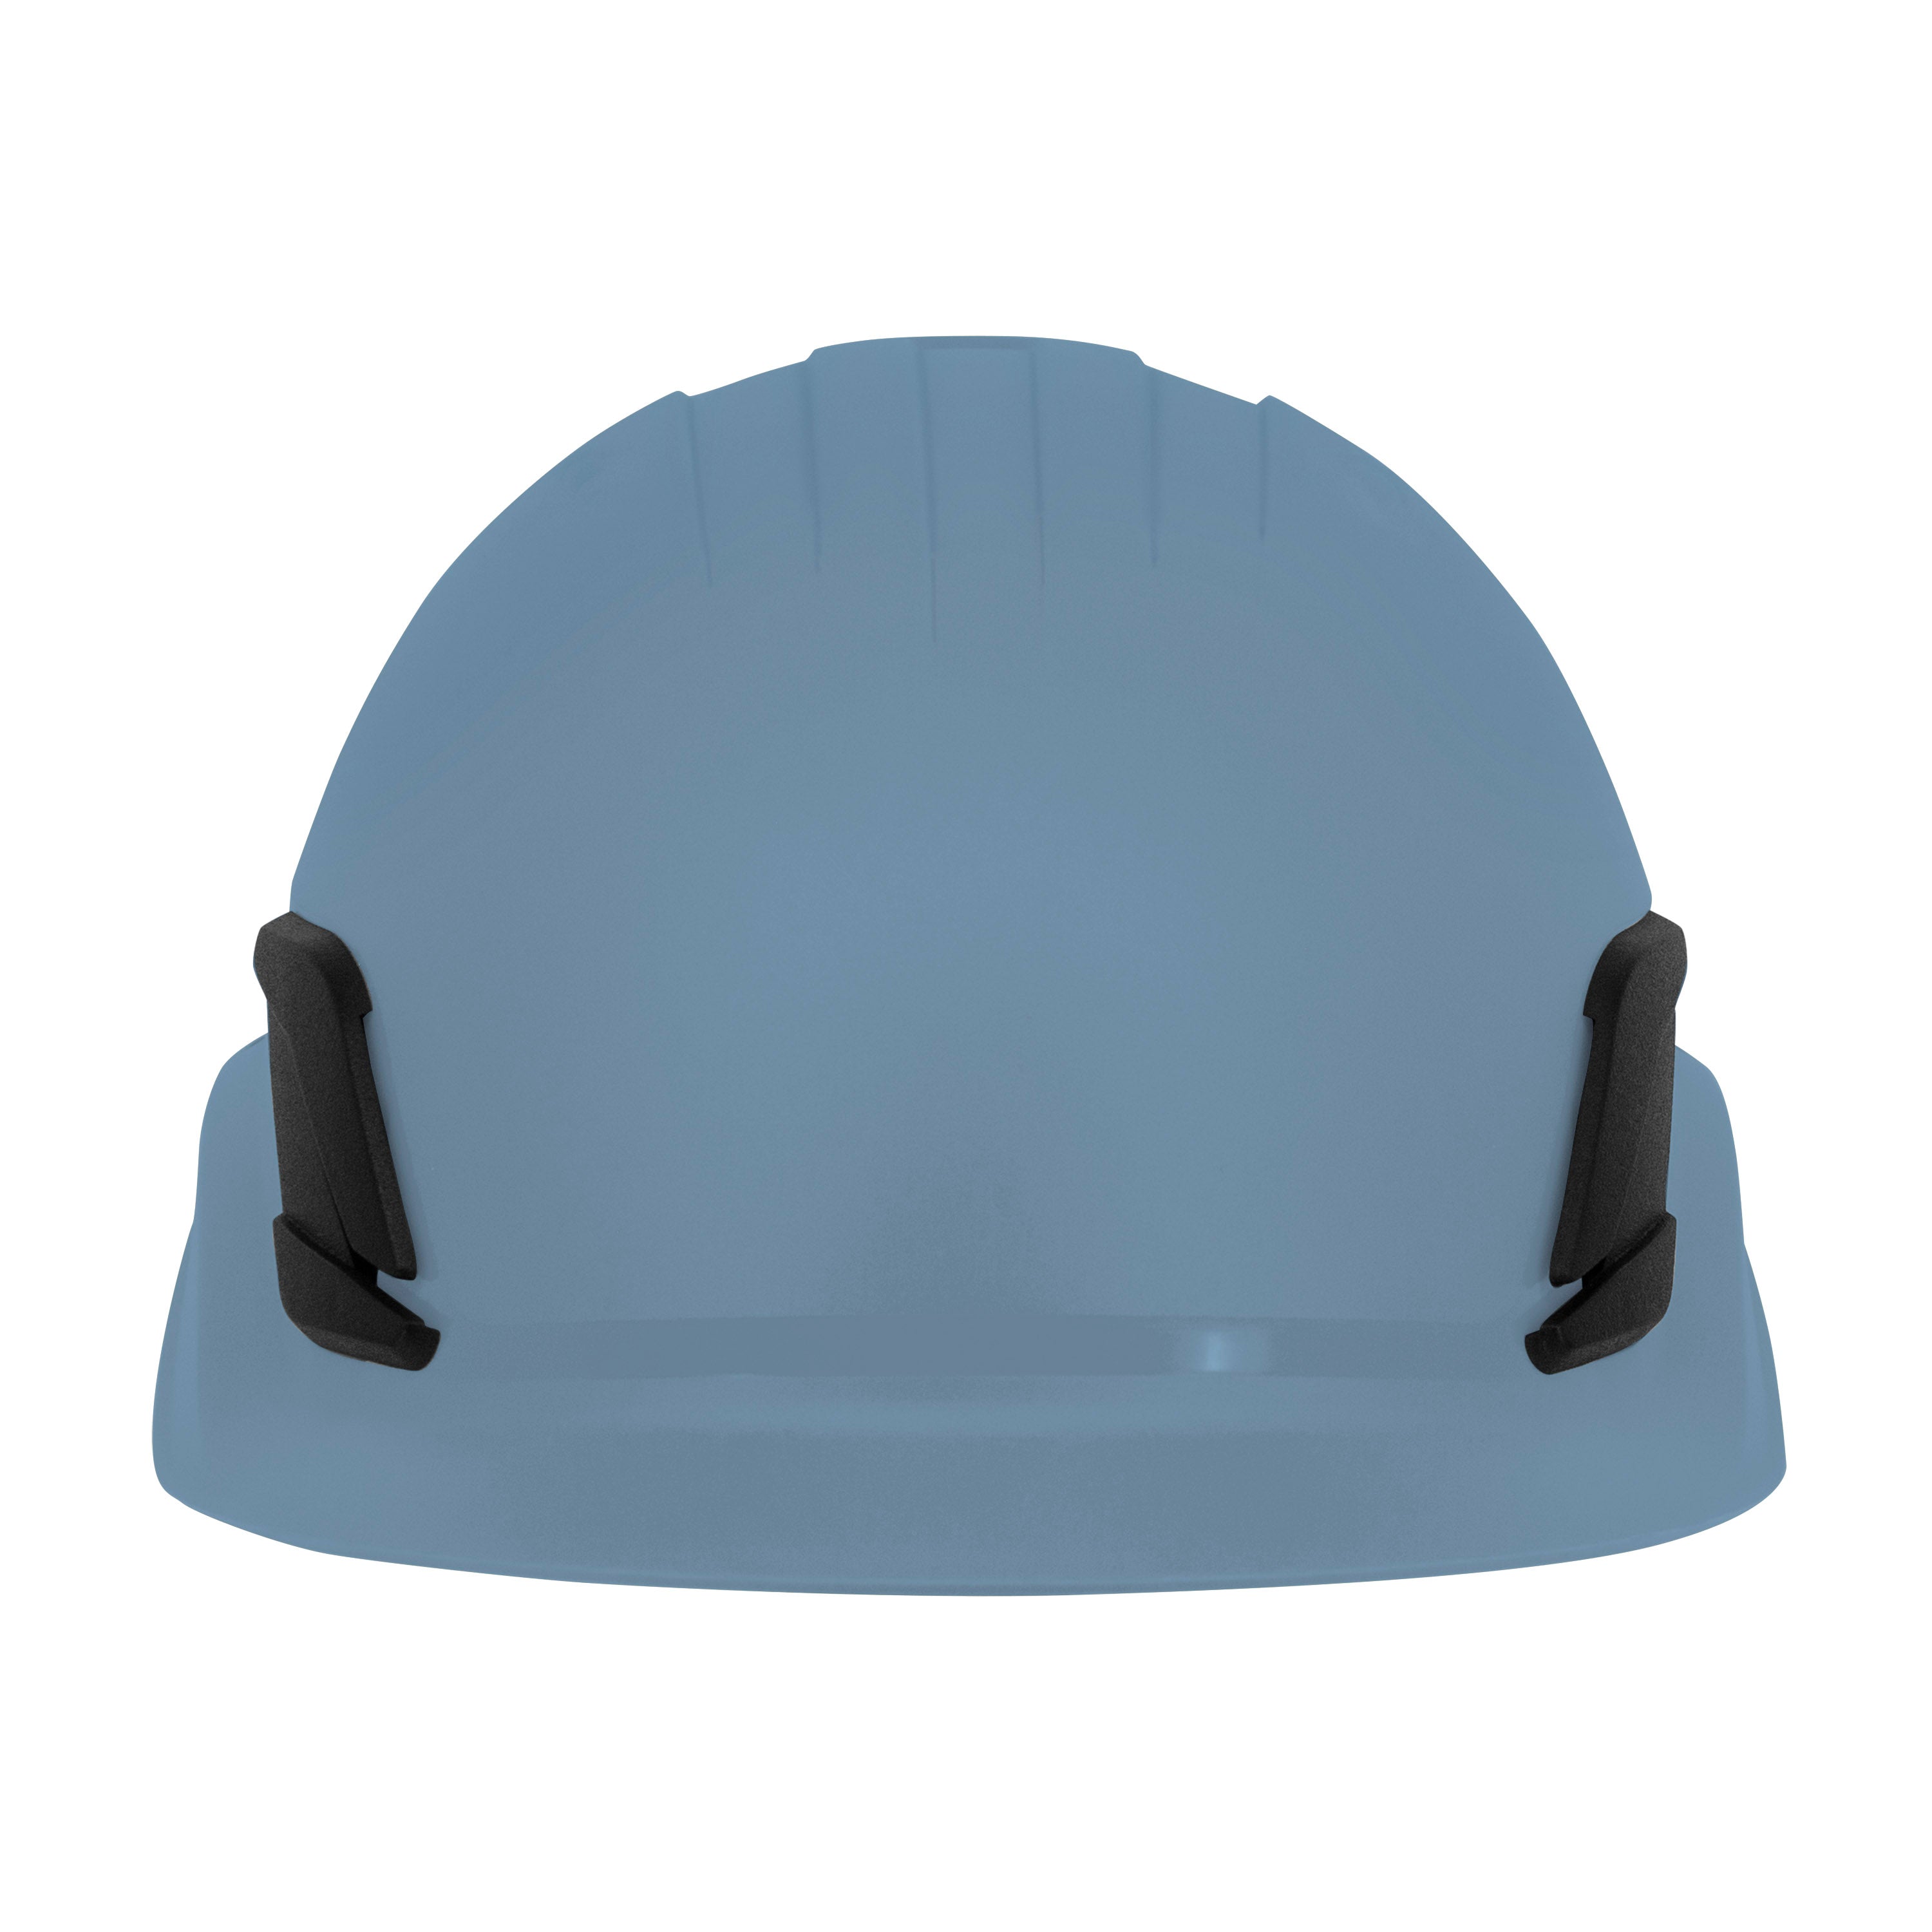 Casco estilo gorra de escalada de titanio - Blanco